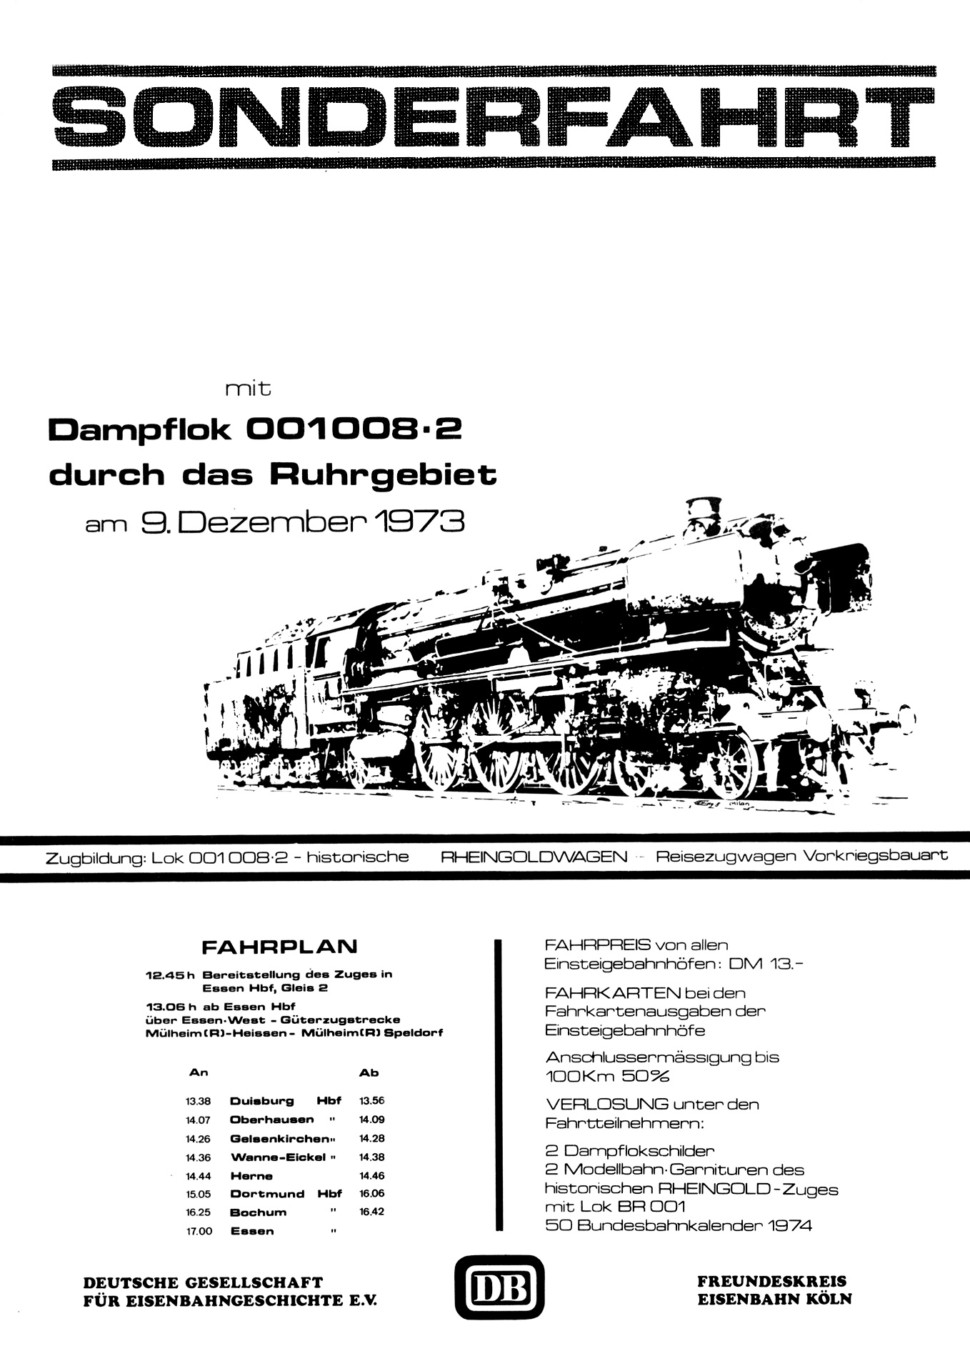 Ausschreibung und Fahrplan zur Sonderfahrt 01 008 am 09.12.1973